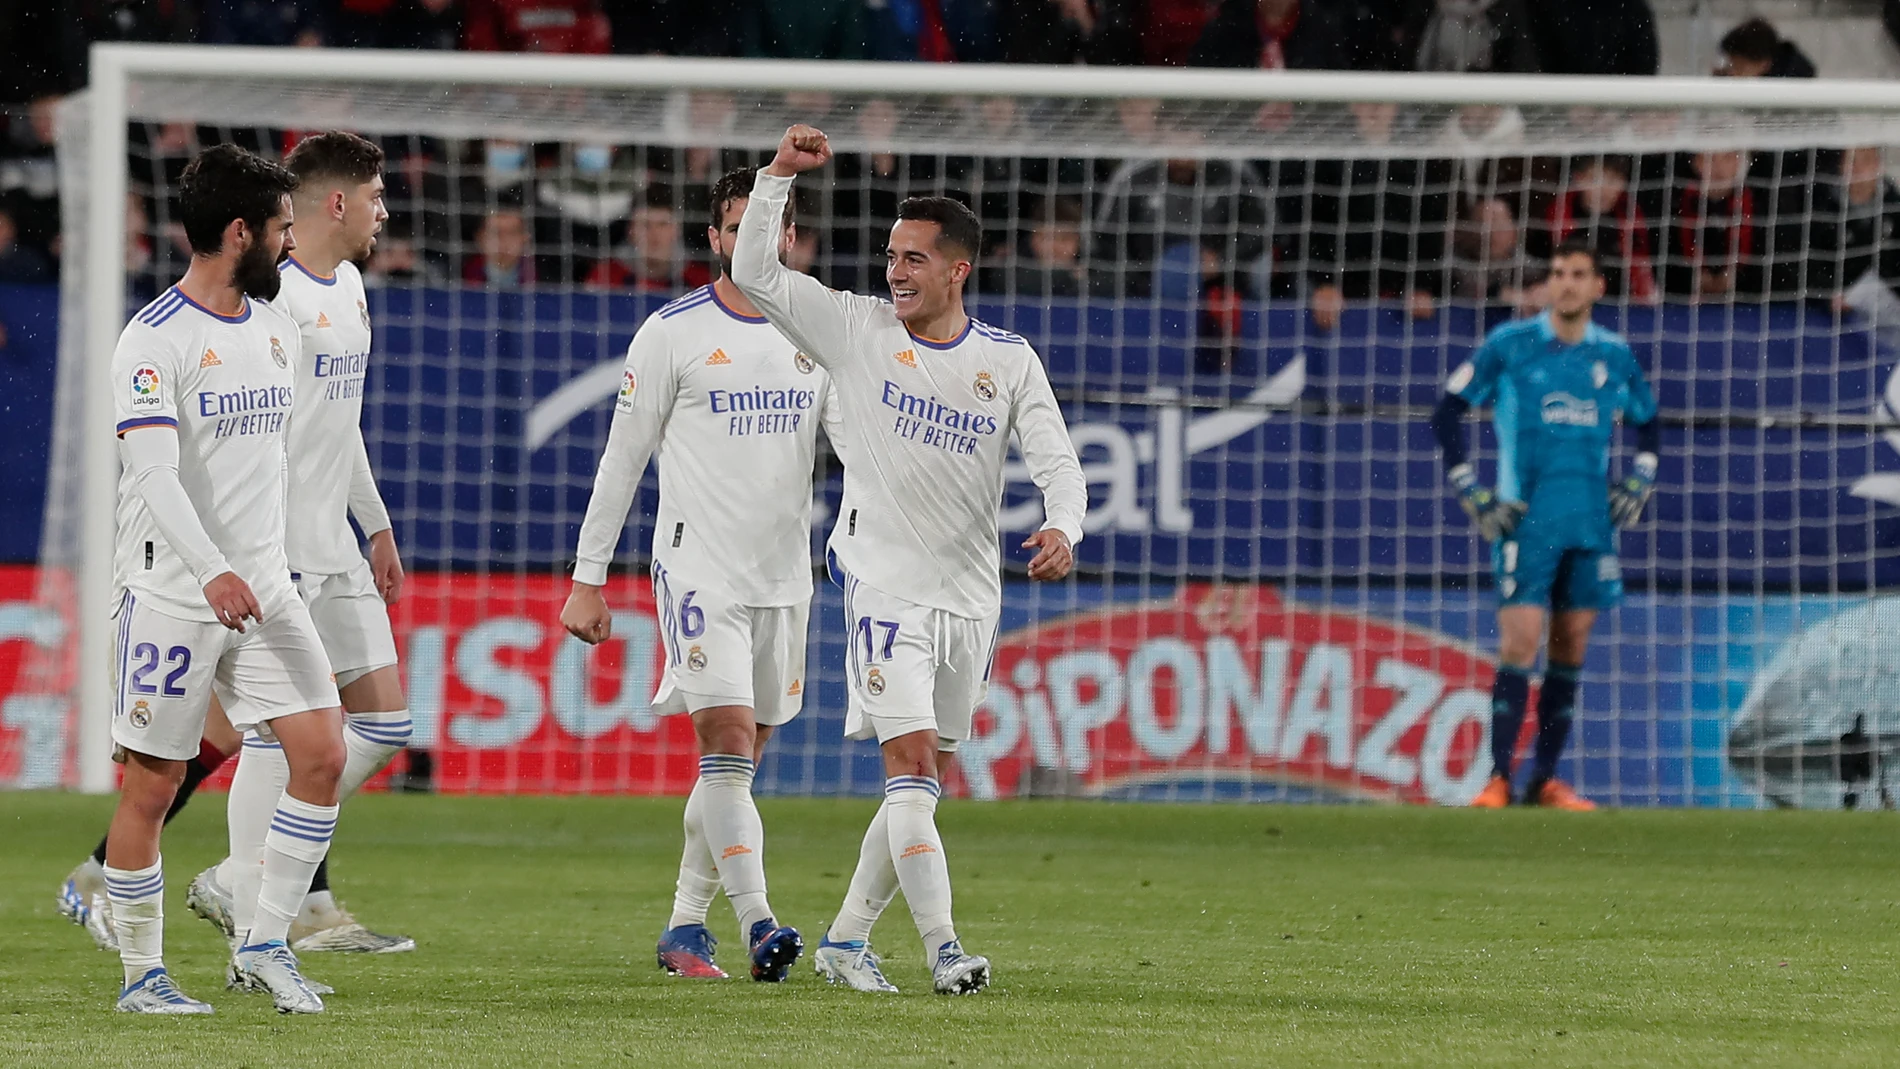 Lucas Vázquez celebra uno de los goles del Real Madrid esta temporada. Contra el Espanyol puede ganar LaLiga y después juega contra el Atlético